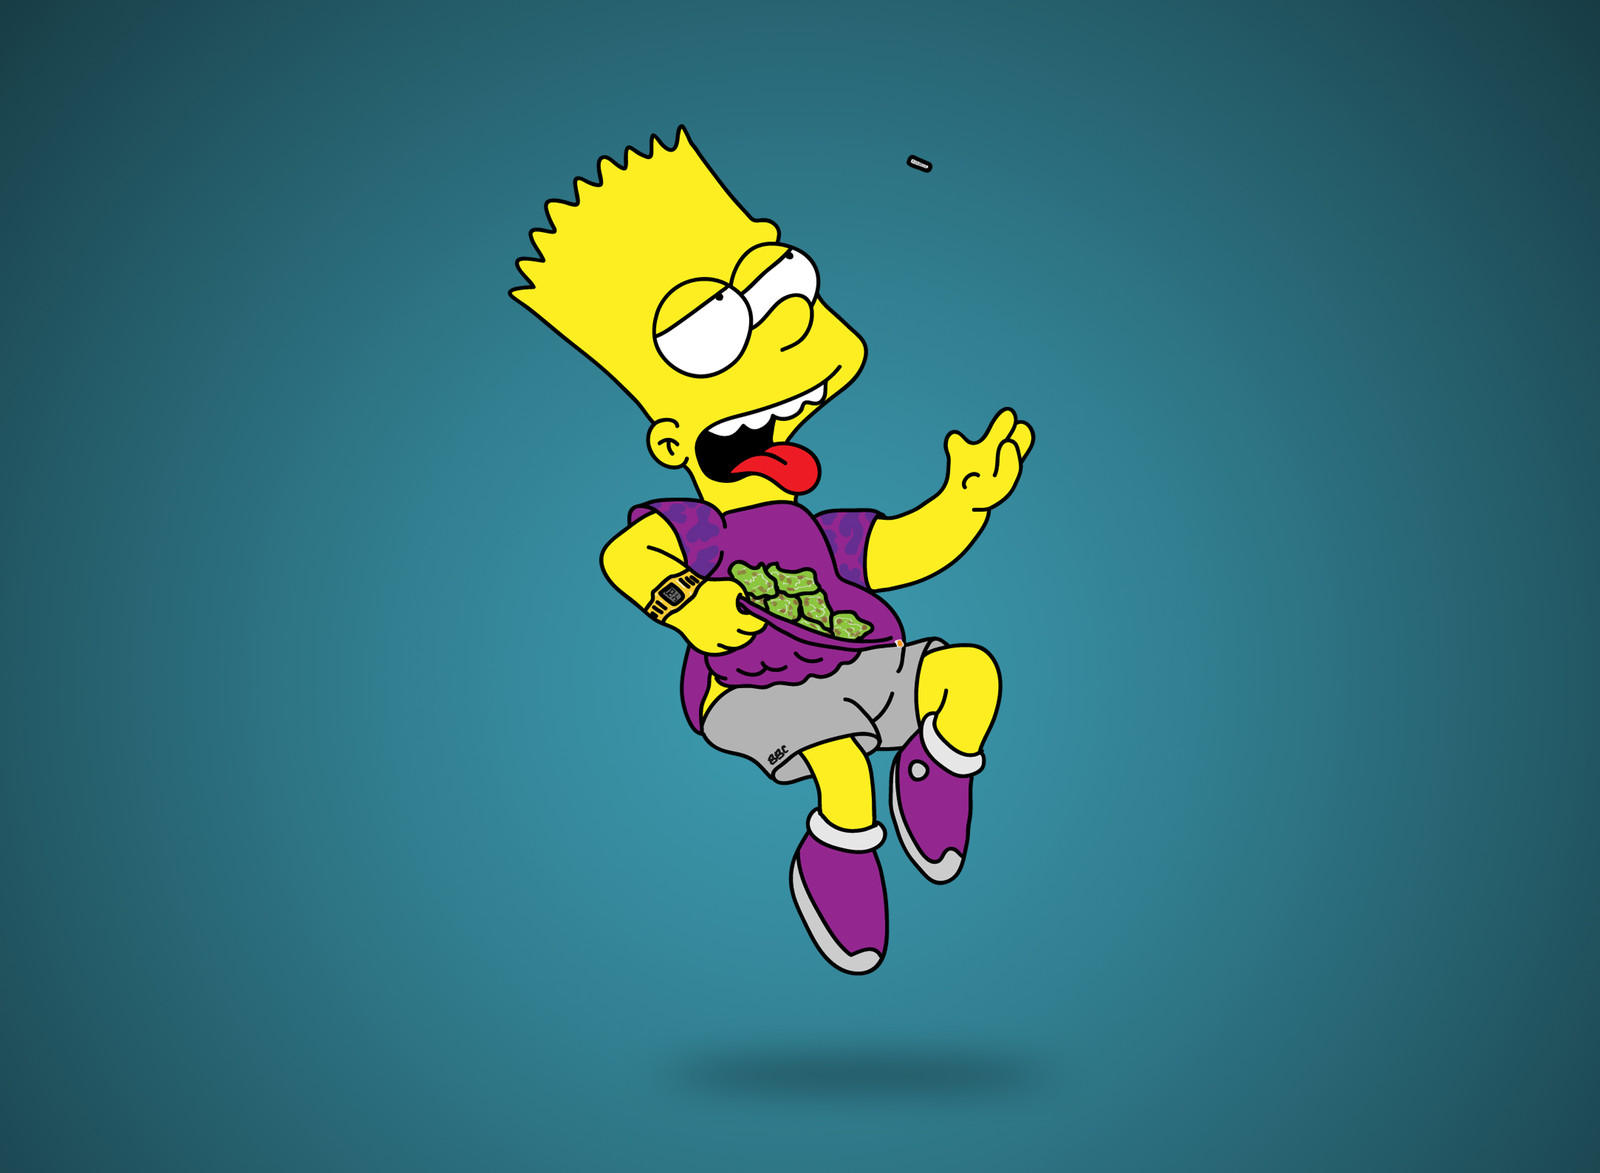 Roman Bidnyy - Bart Simpson x XanaX x Bape